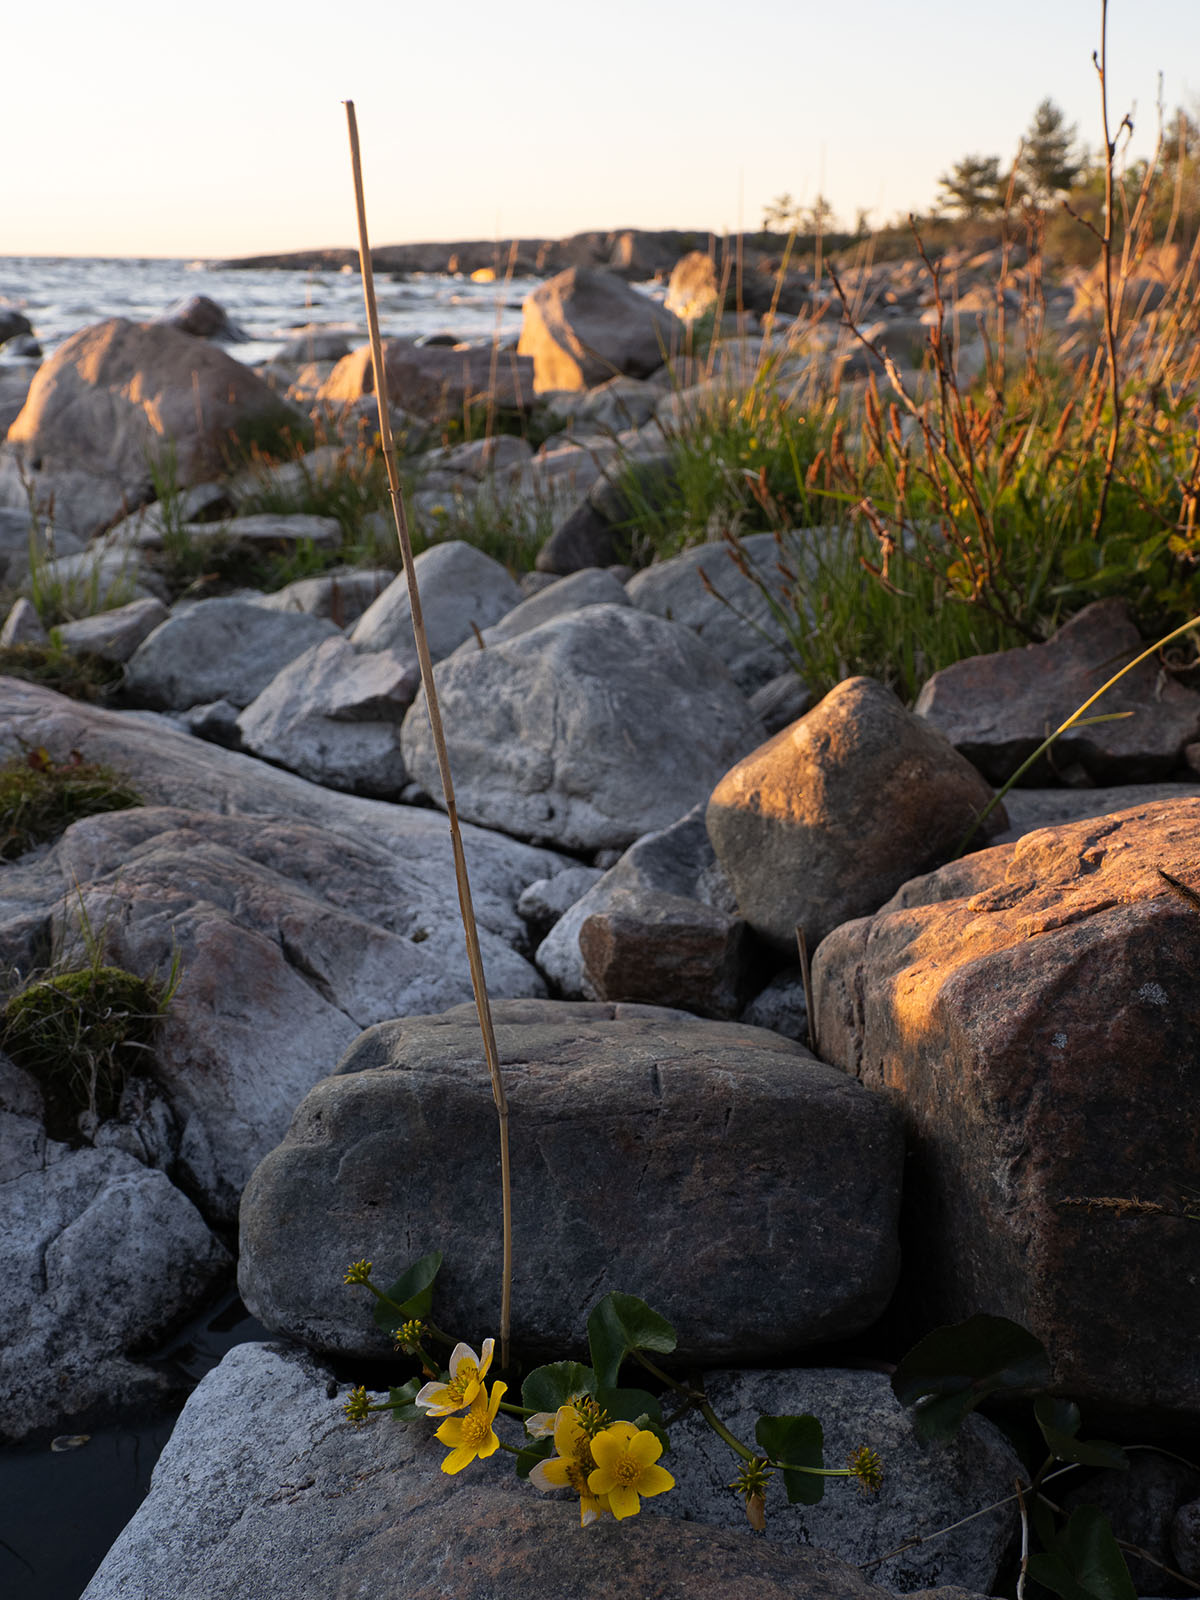 Вопреки своему названию, Калужница болотная (Caltha palustris) растёт на каменистом берегу Балтийского моря в природном парке Kapplasse. Май 2020 года. Автор фото: Сутормина Марина